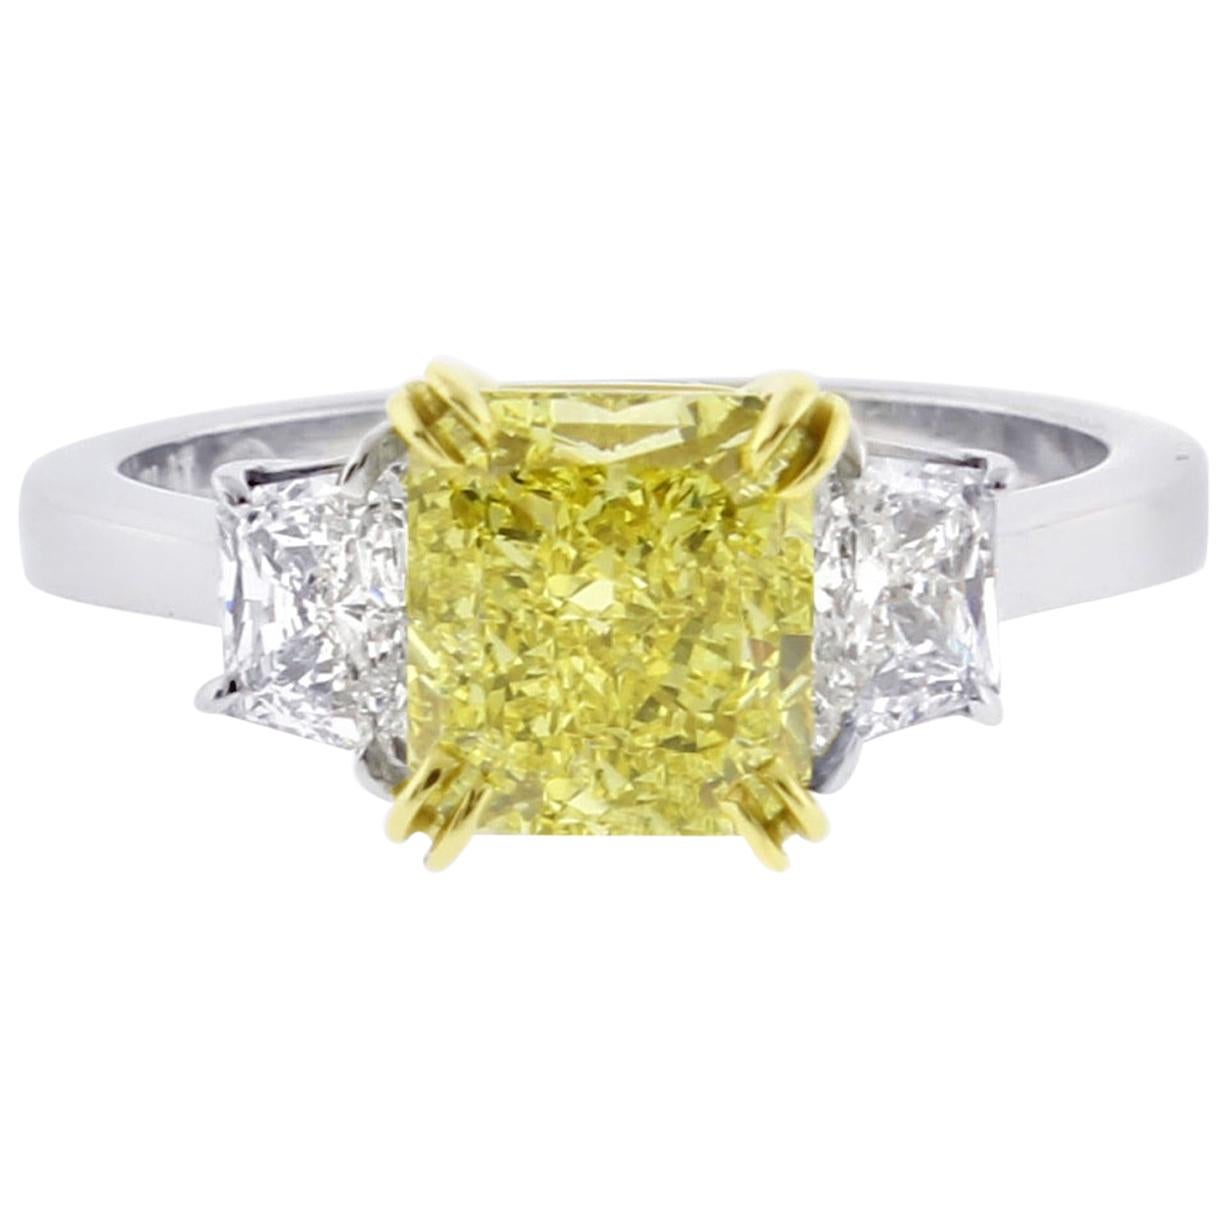 Dreisteiniger Ring mit intensiv gelbem 1,74 Karat strahlend gelbem Diamant von Pampillona